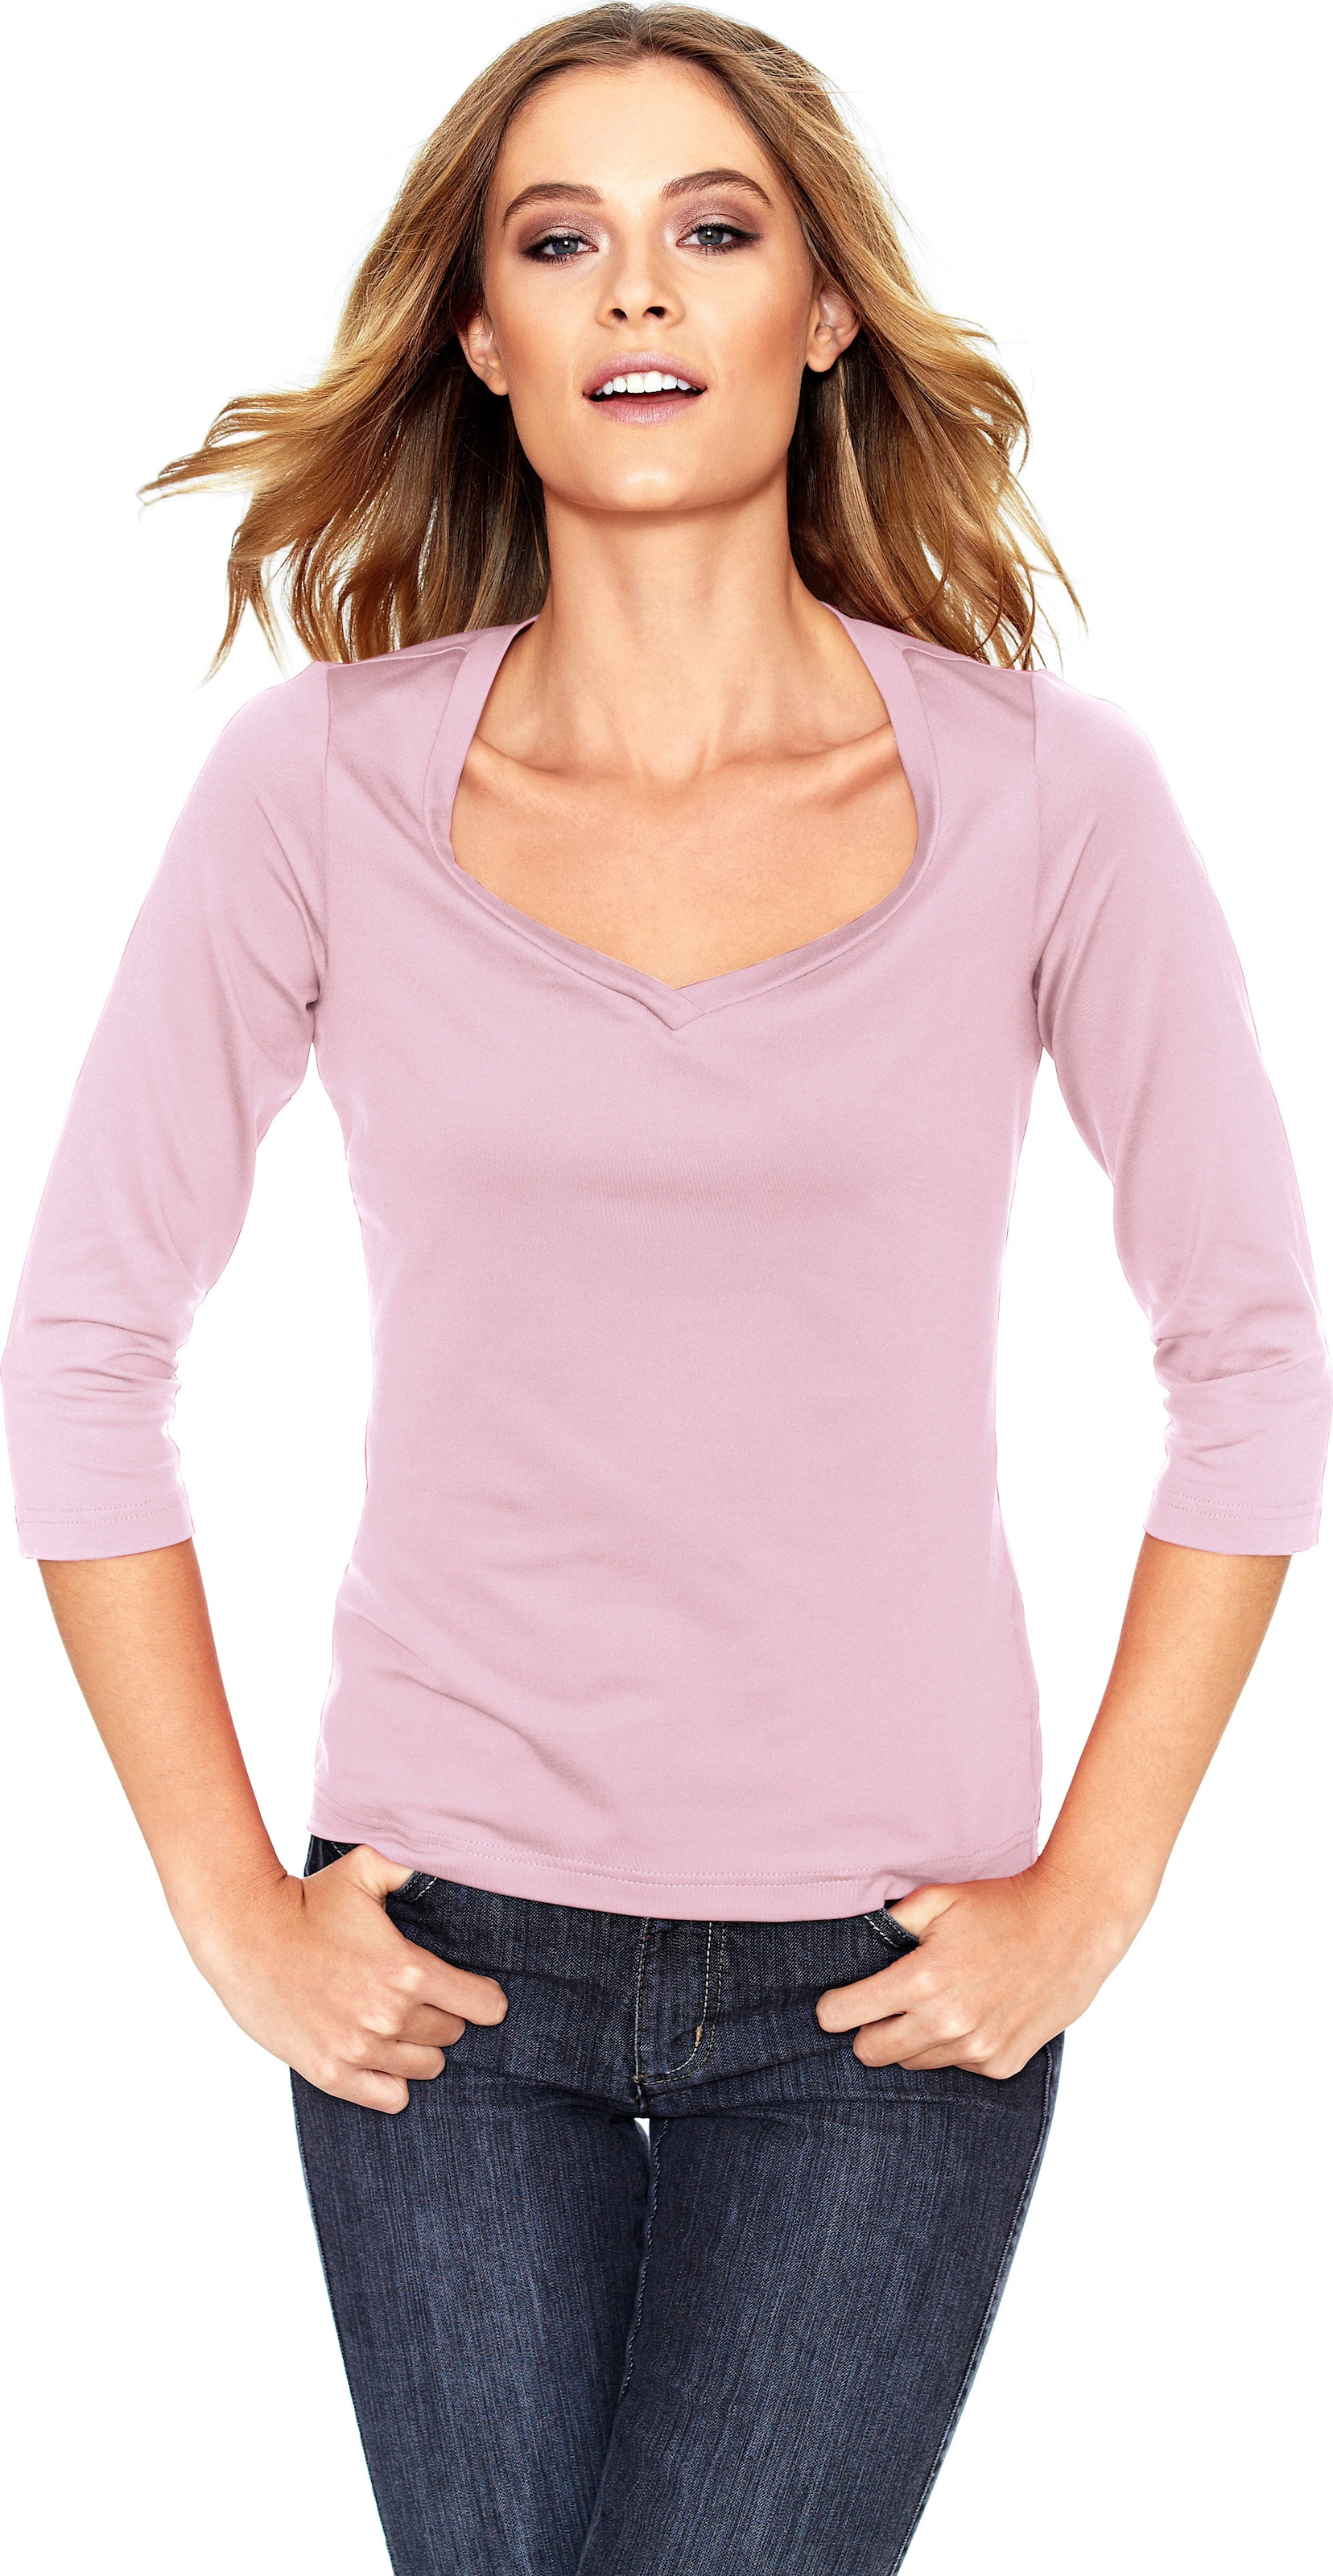 Herz mit günstig Kaufen-Shirt in rosé von heine. Shirt in rosé von heine <![CDATA[Shirt Femininer Kombi-Style aus Tactel, in angenehmer Stretch-Qualität. Mit hoher Farbbrillanz und leichtem Glanz. Figurbetont, mit Herzausschnitt und 3/4-Arm.]]>. 